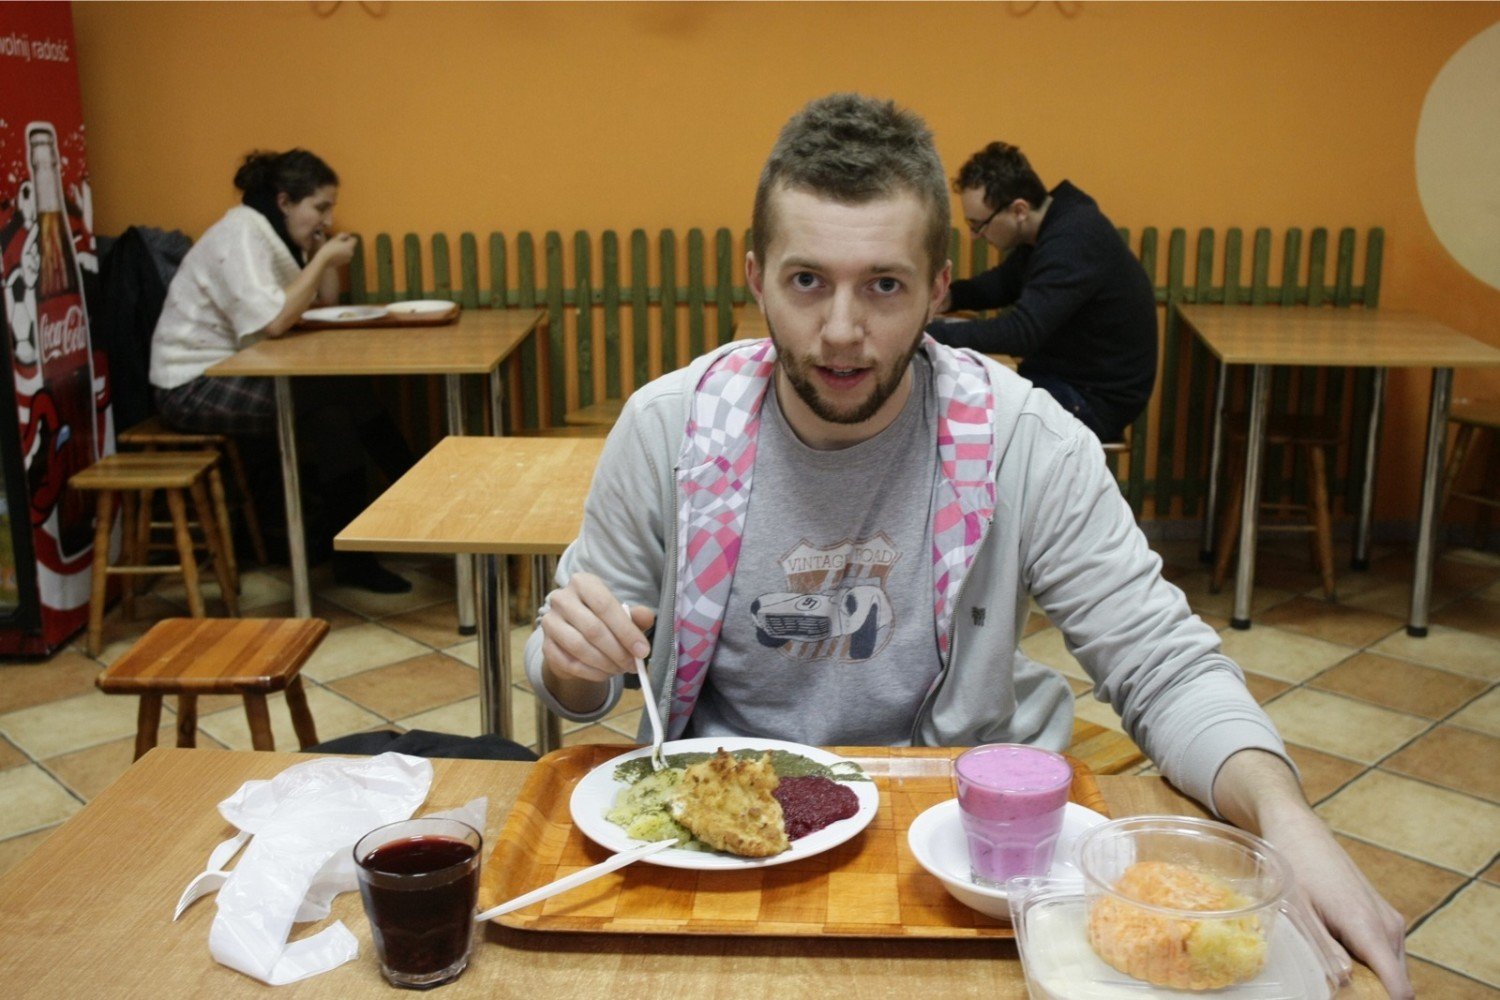 Tanie obiady dla studenta, Warszawa, czyli gdzie zjeść dobrze i tanio  [PRZEGLĄD] | Warszawa Nasze Miasto